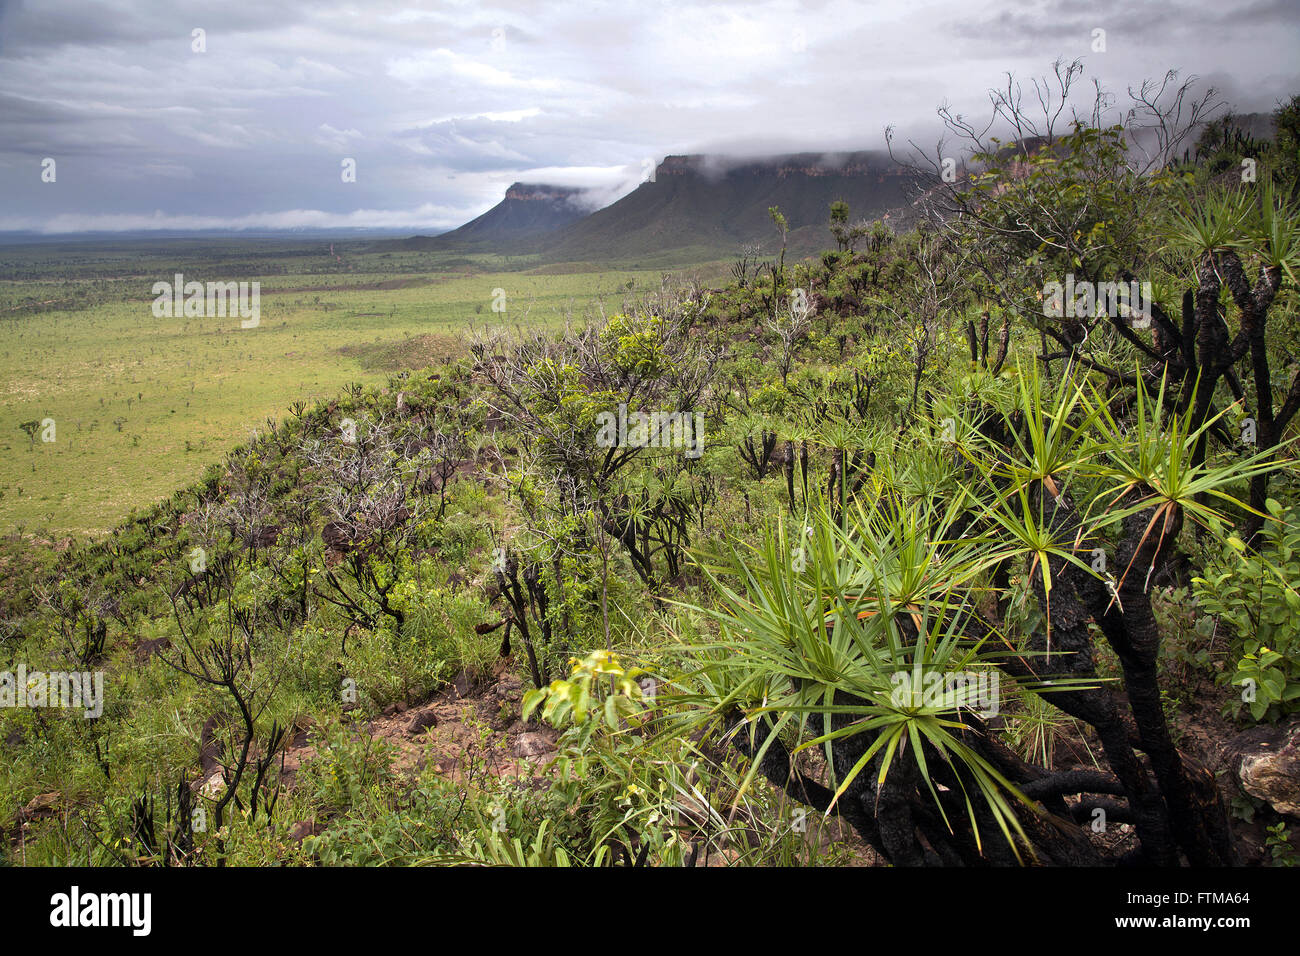 Savanne Vegetation auf den Hängen der Sierra des Heiligen Geistes - Jalapao Stockfoto